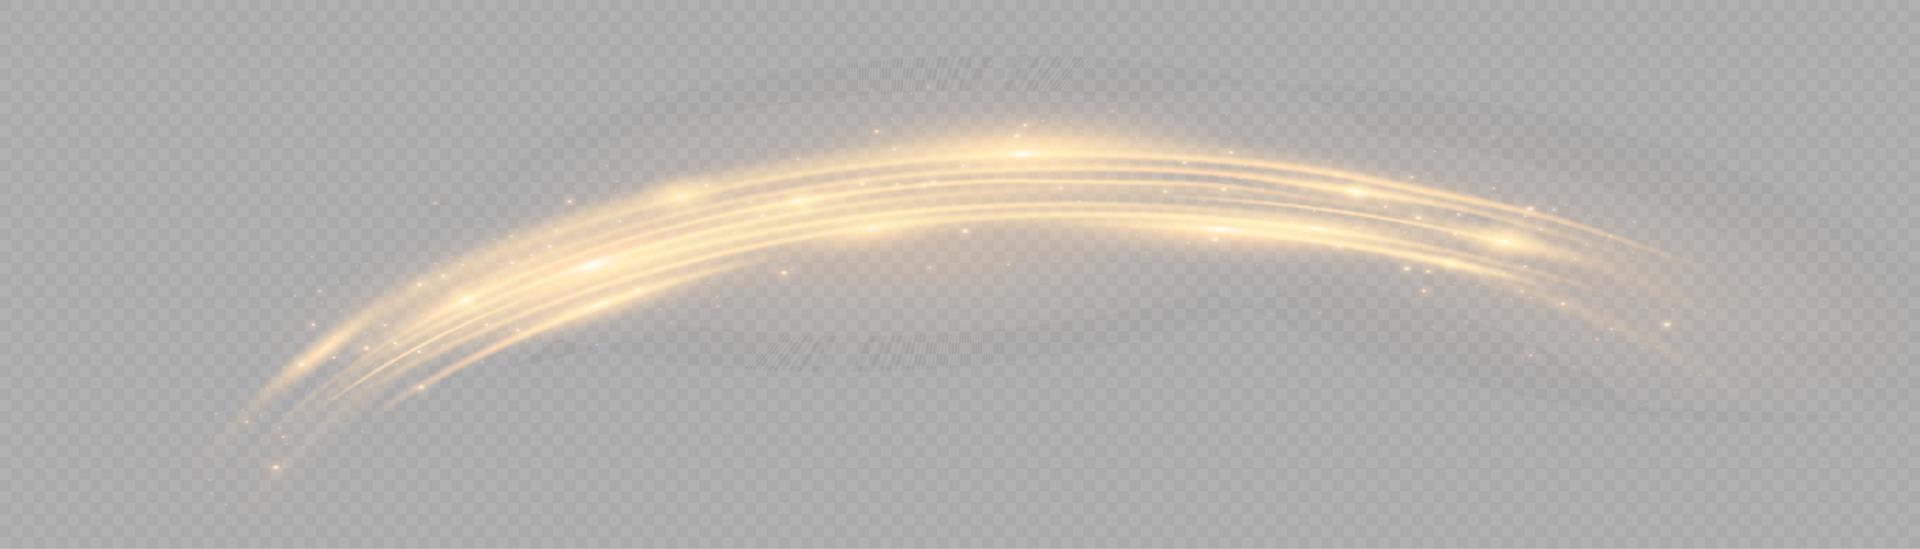 gouden gloeiend glimmend lijnen effect vector achtergrond. lichtgevend wit lijnen van snelheid. licht gloeiend effect. licht spoor Golf, brand pad spoor lijn en gloeien kromme ronddraaien.